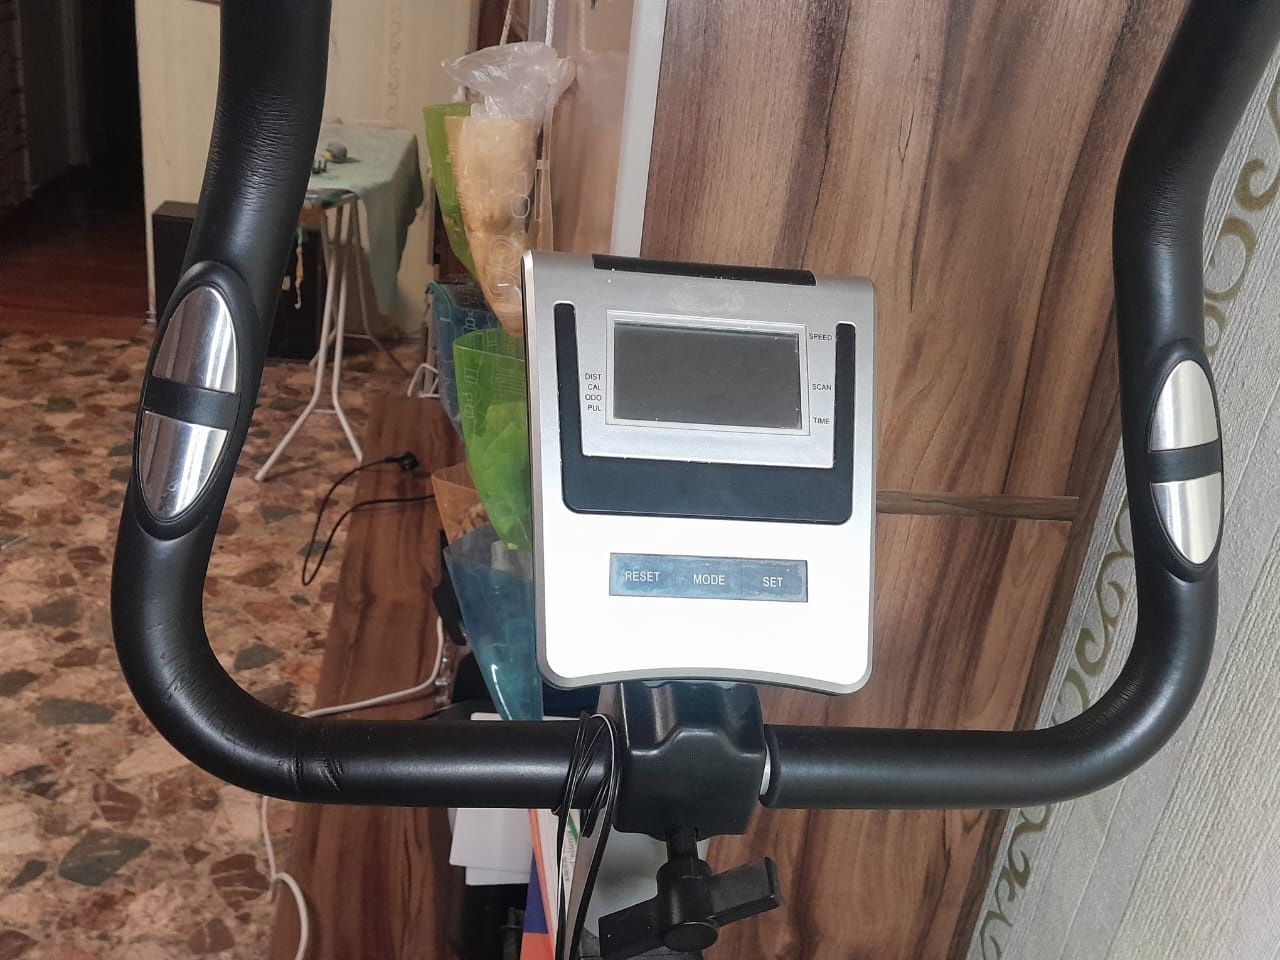 Продаётся велотренажёр, в хорошом состояние с рабочим экраном